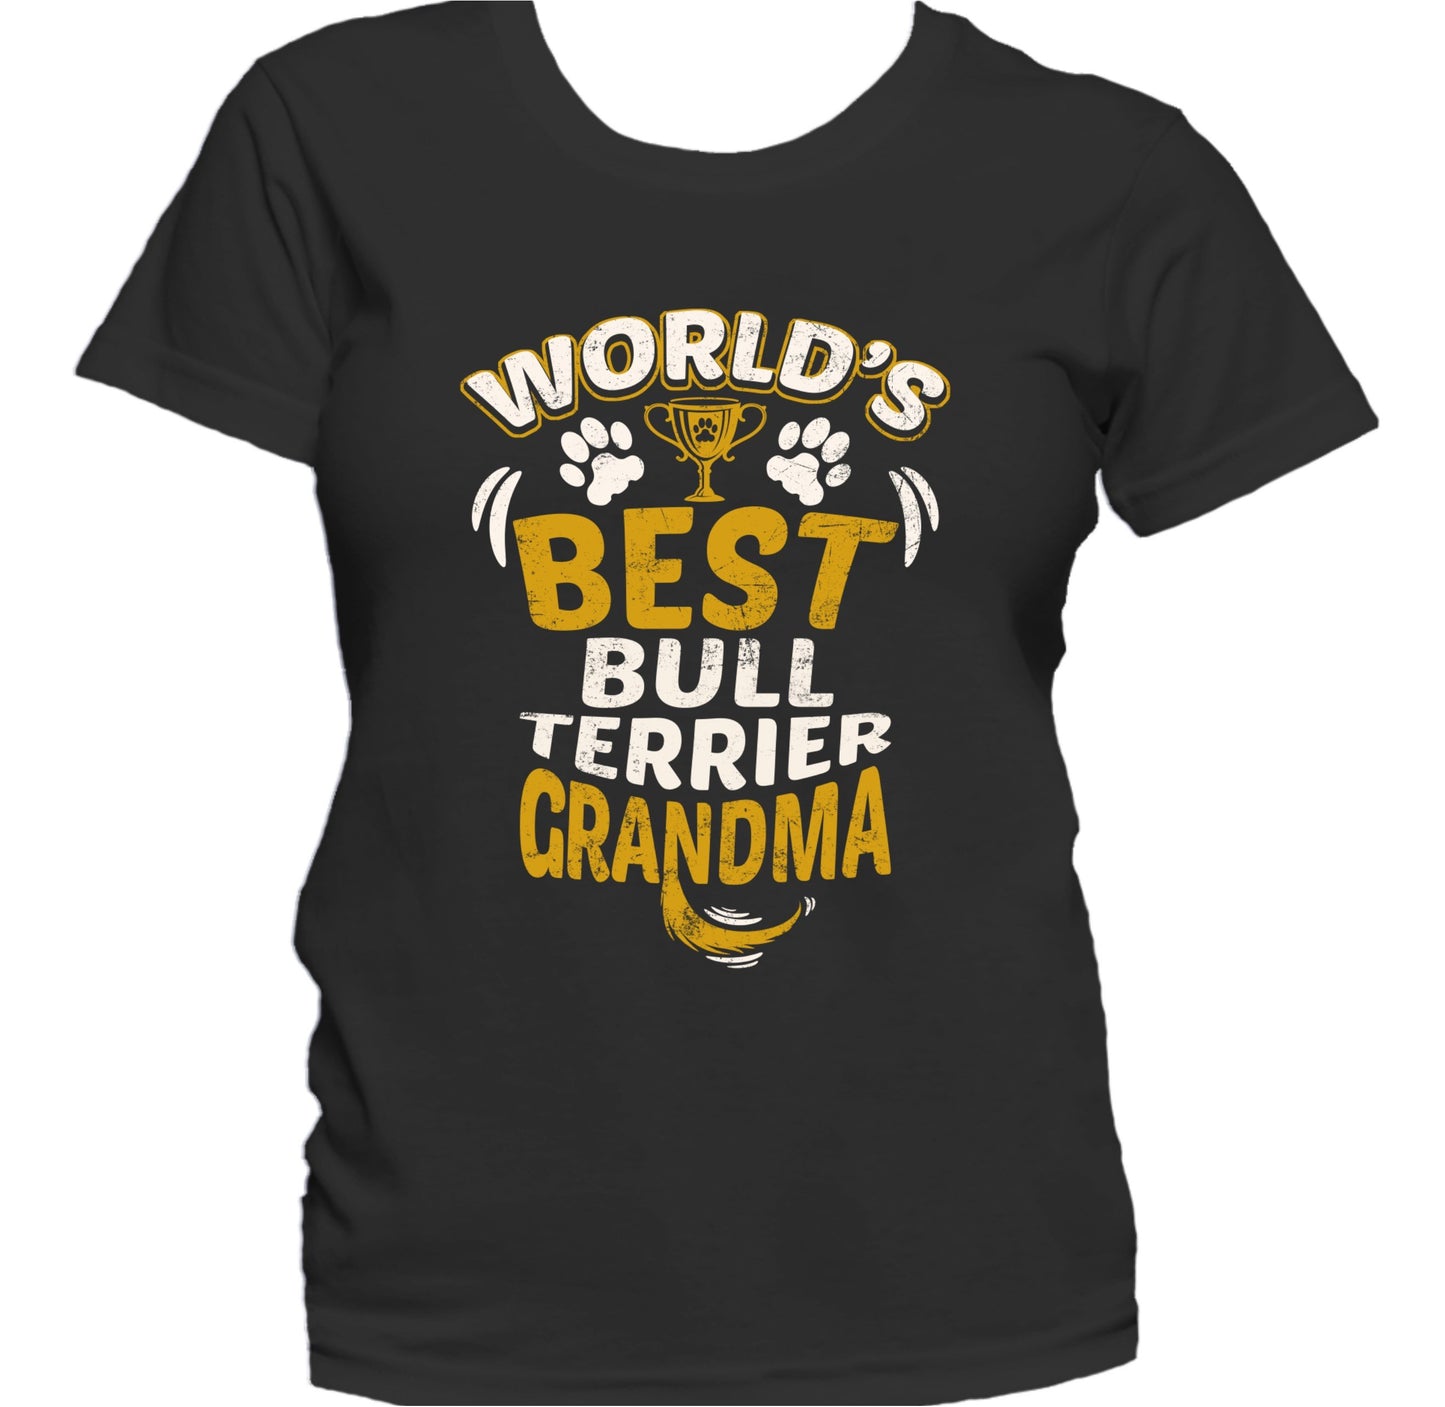 World's Best Bull Terrier Grandma Granddog Women's T-Shirt